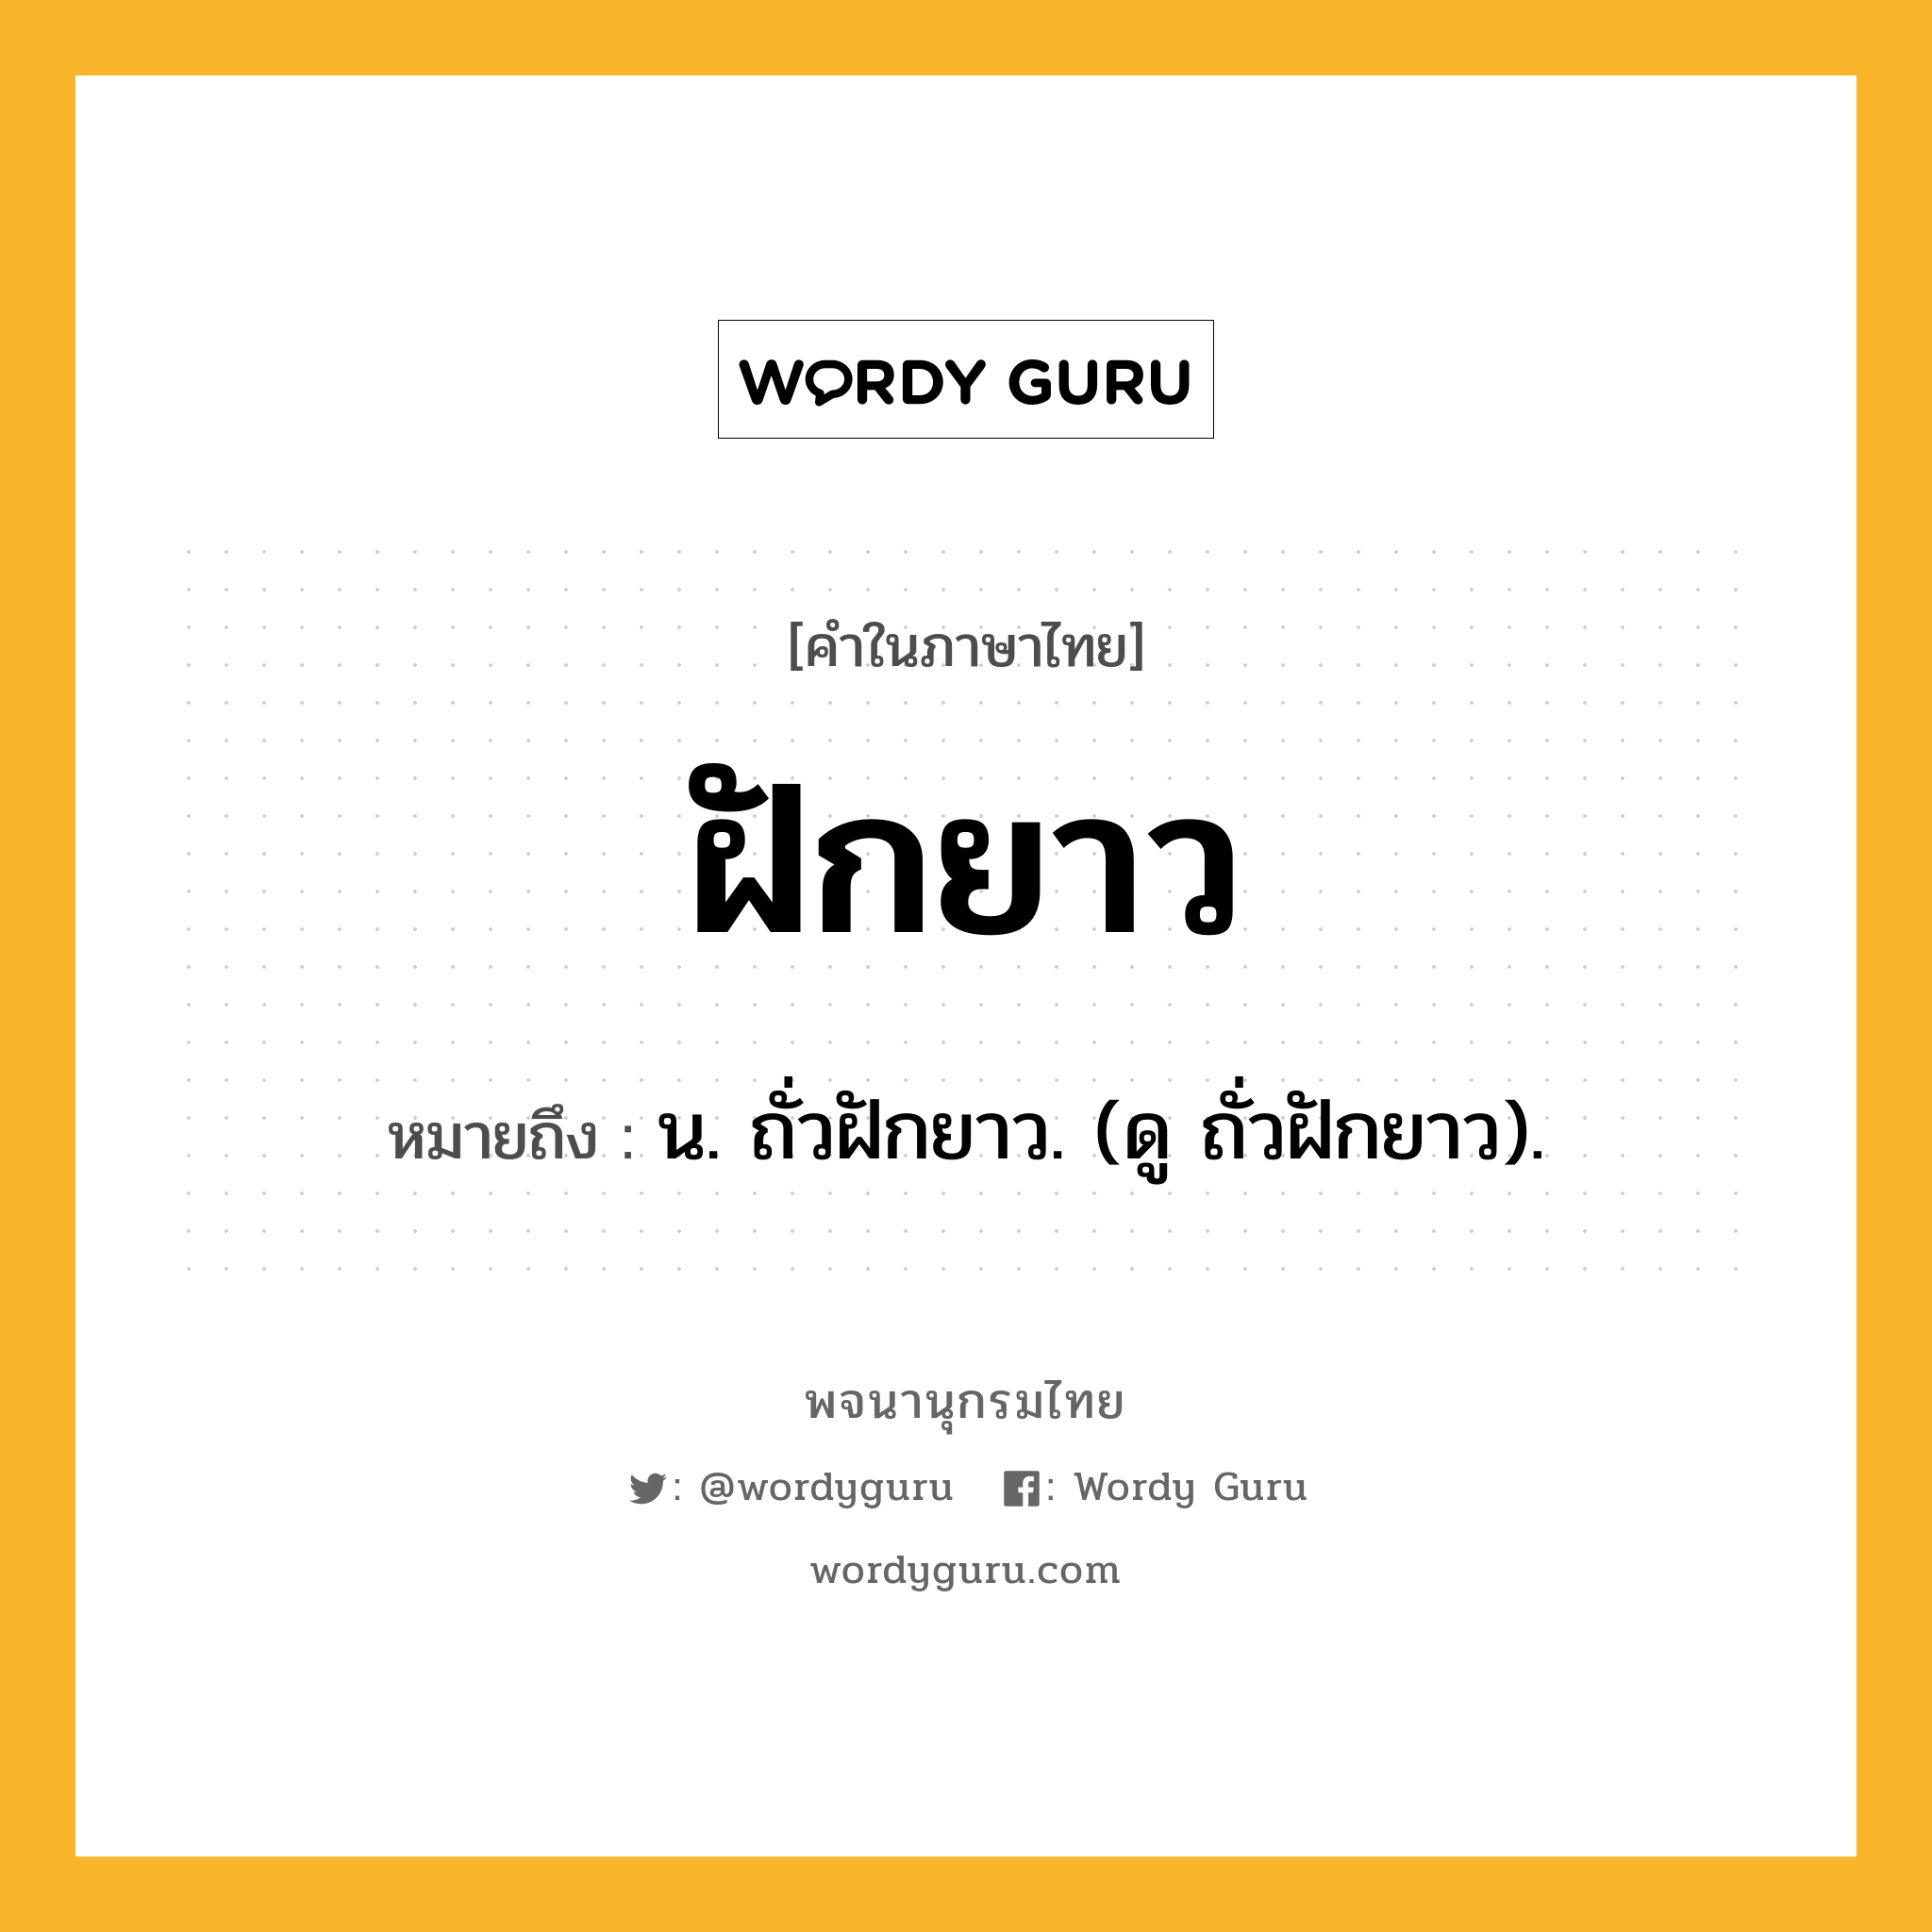 ฝักยาว ความหมาย หมายถึงอะไร?, คำในภาษาไทย ฝักยาว หมายถึง น. ถั่วฝักยาว. (ดู ถั่วฝักยาว).